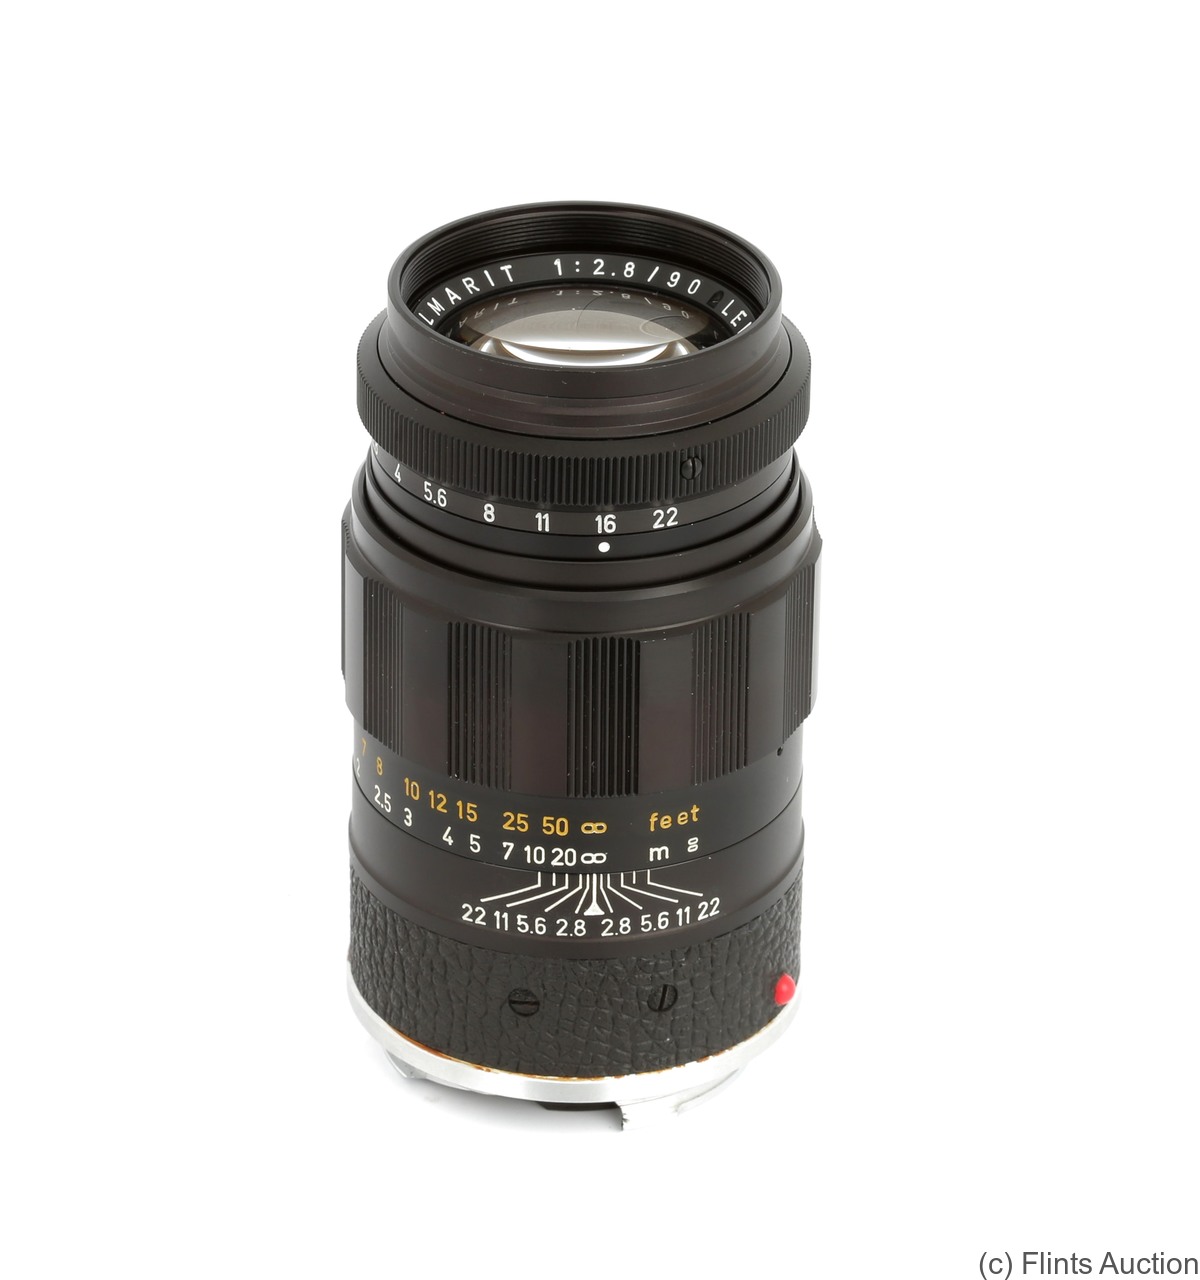 Leitz: 90mm (9cm) f2.8 Elmarit (BM, black) camera